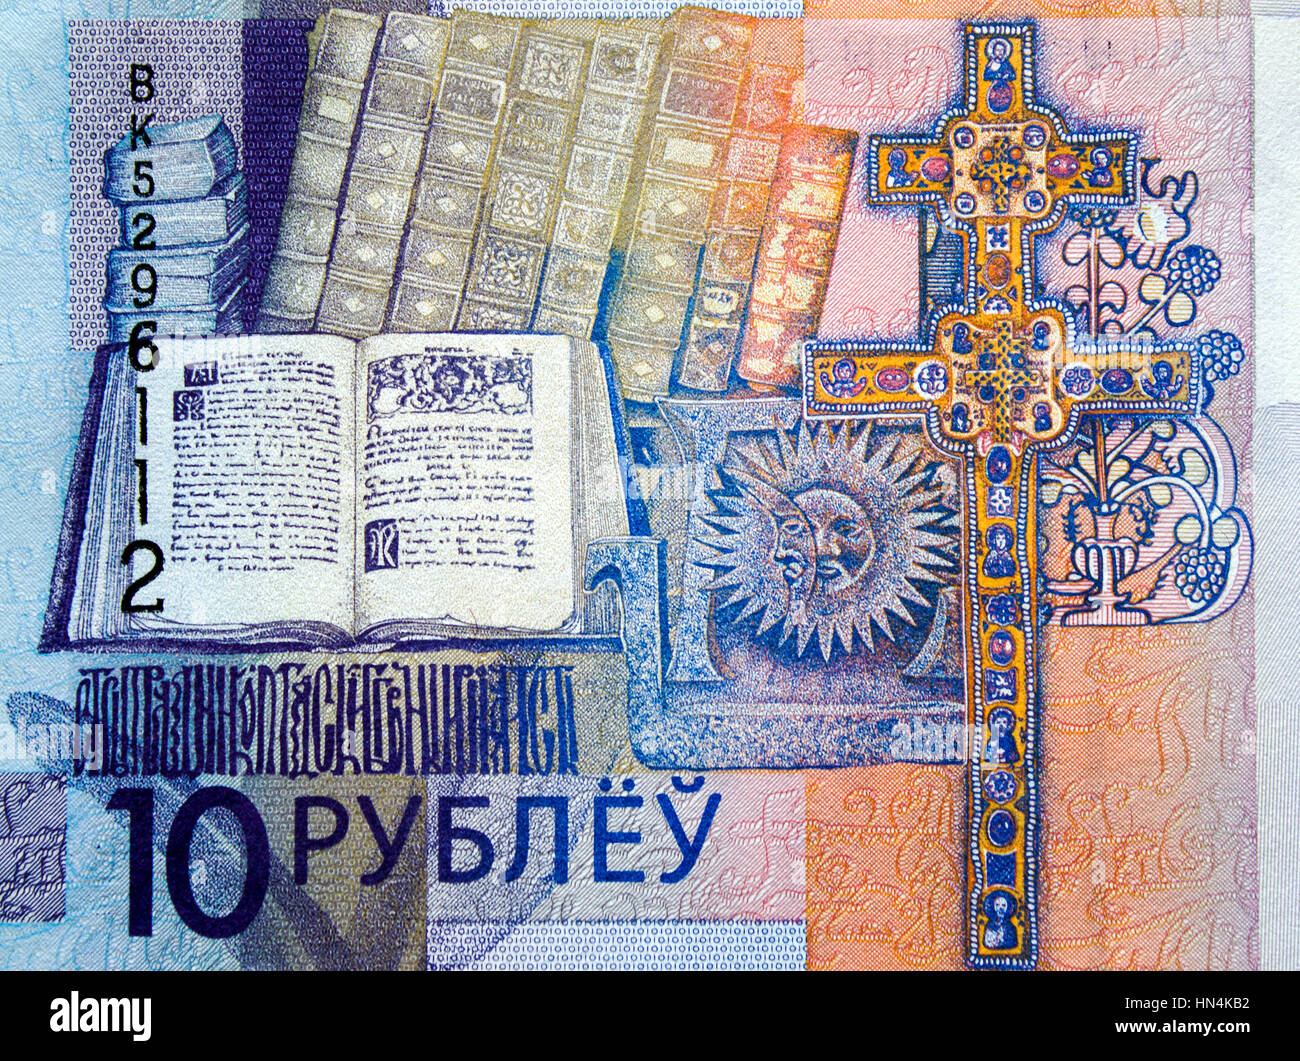 neues Geld in Belarus. Bezeichnung in der Republik Belarus 2016 Stockfoto